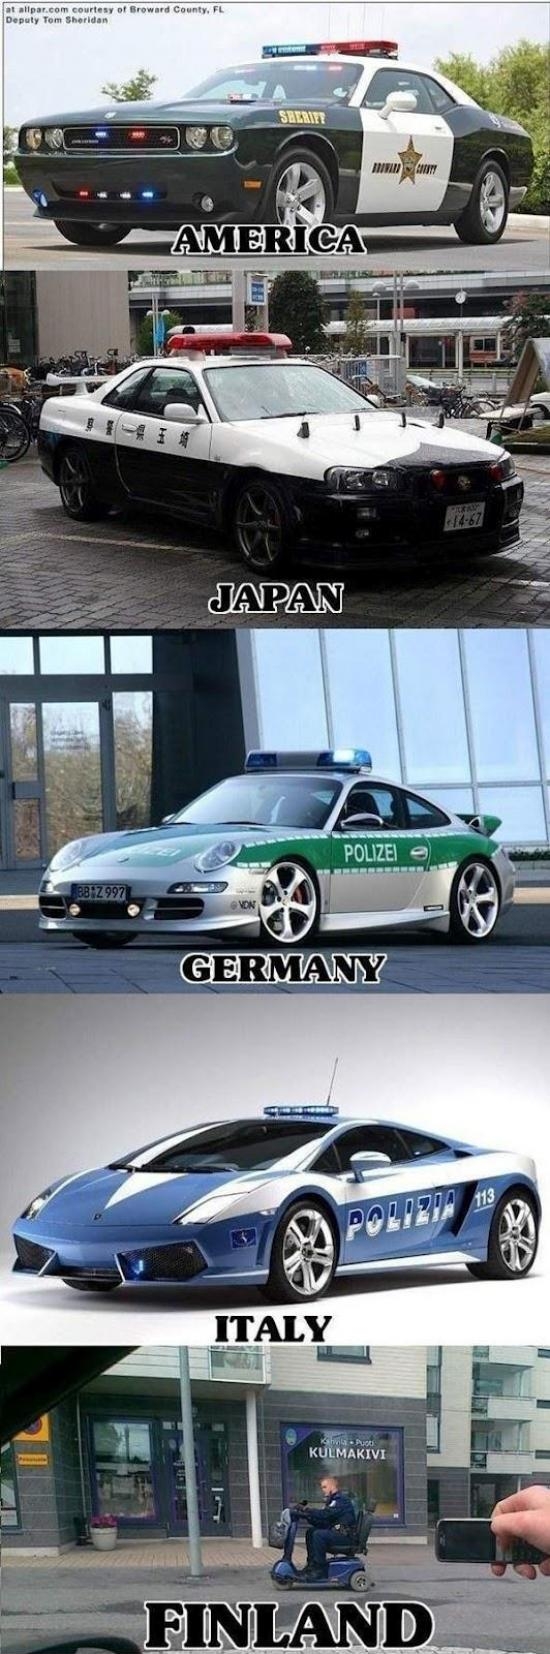 Police vehicles around the world.